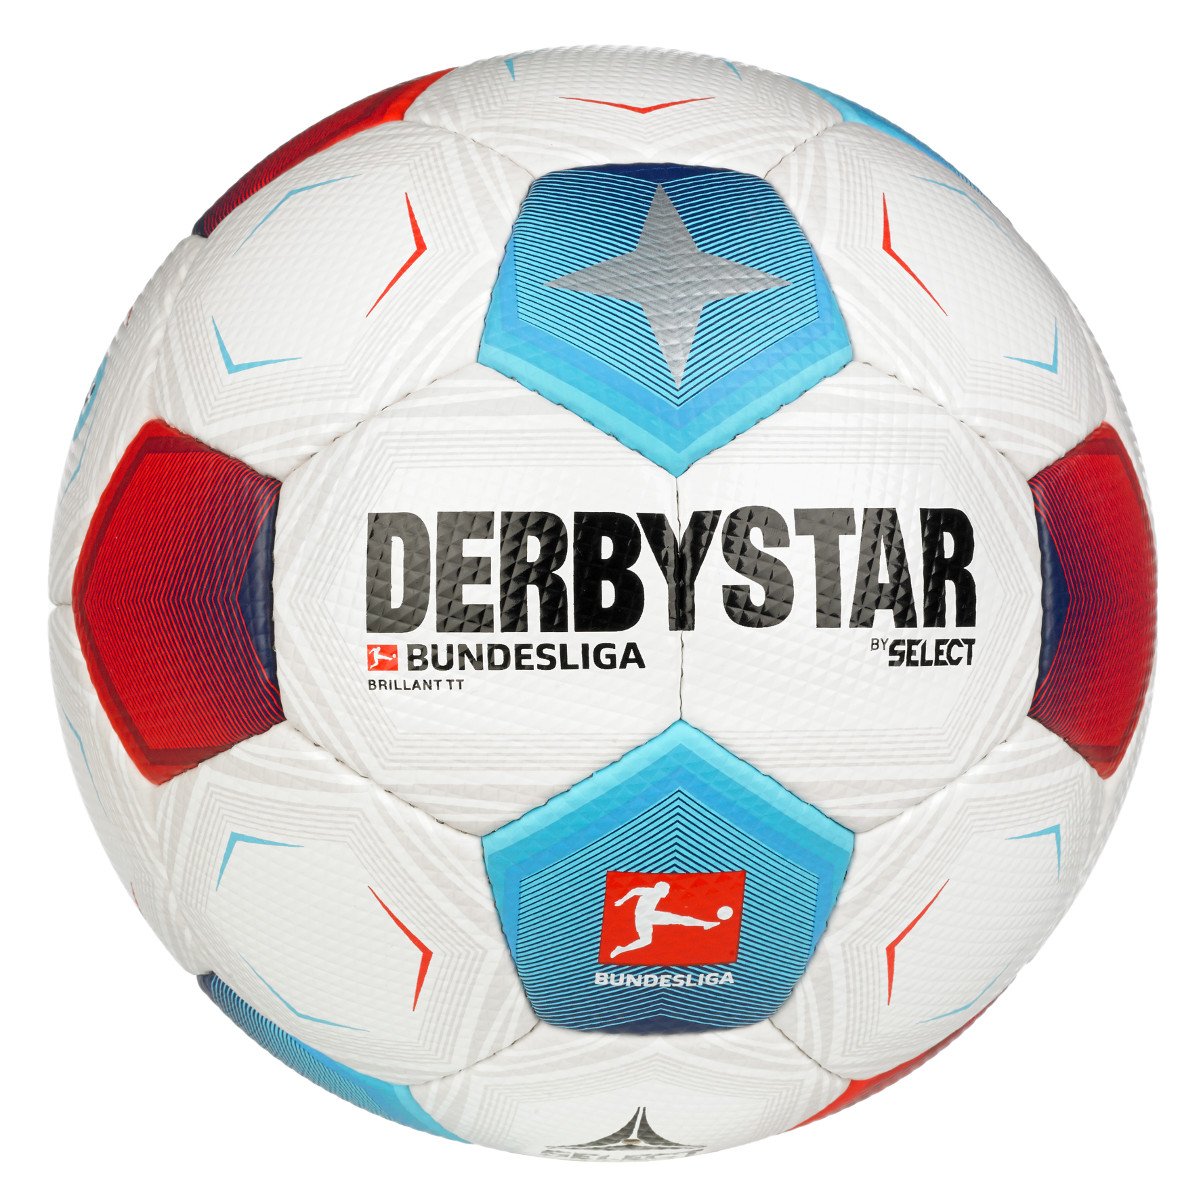 Derbystar Brillant v23 Bundesliga weiß/rot/blau TT Fußball,